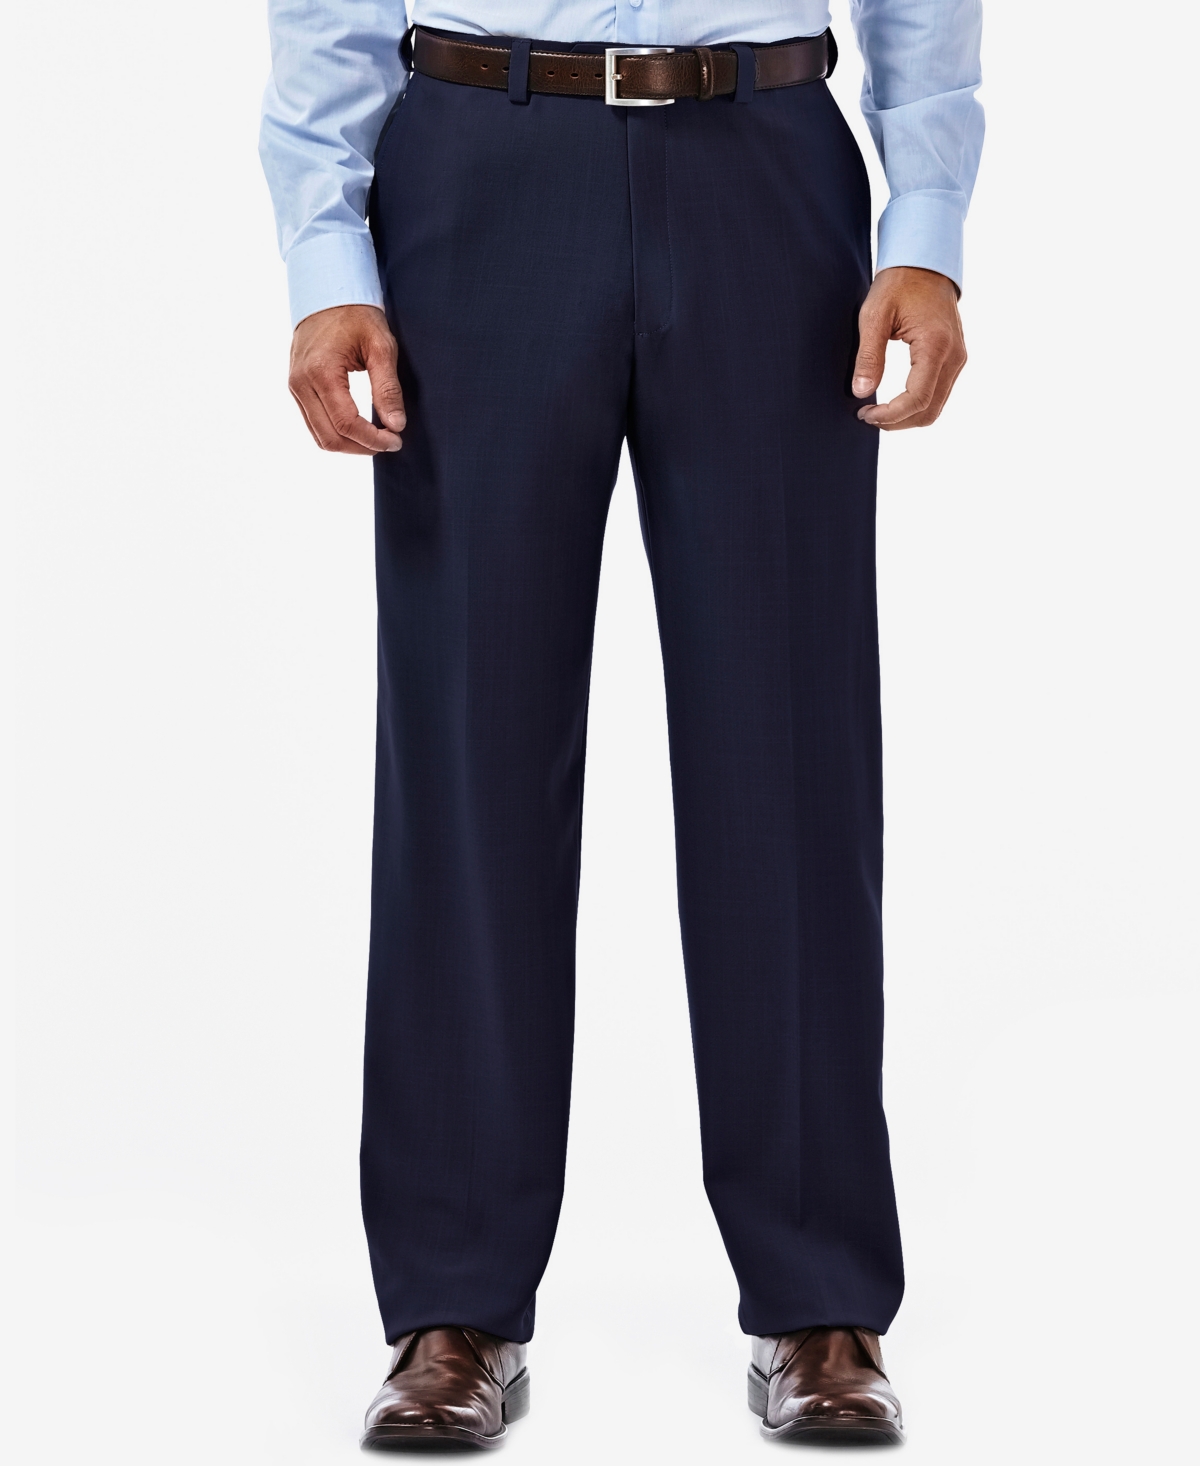 Men's Eclo Stria Classic Fit Flat Front Hidden Expandable Dress Pants - Black